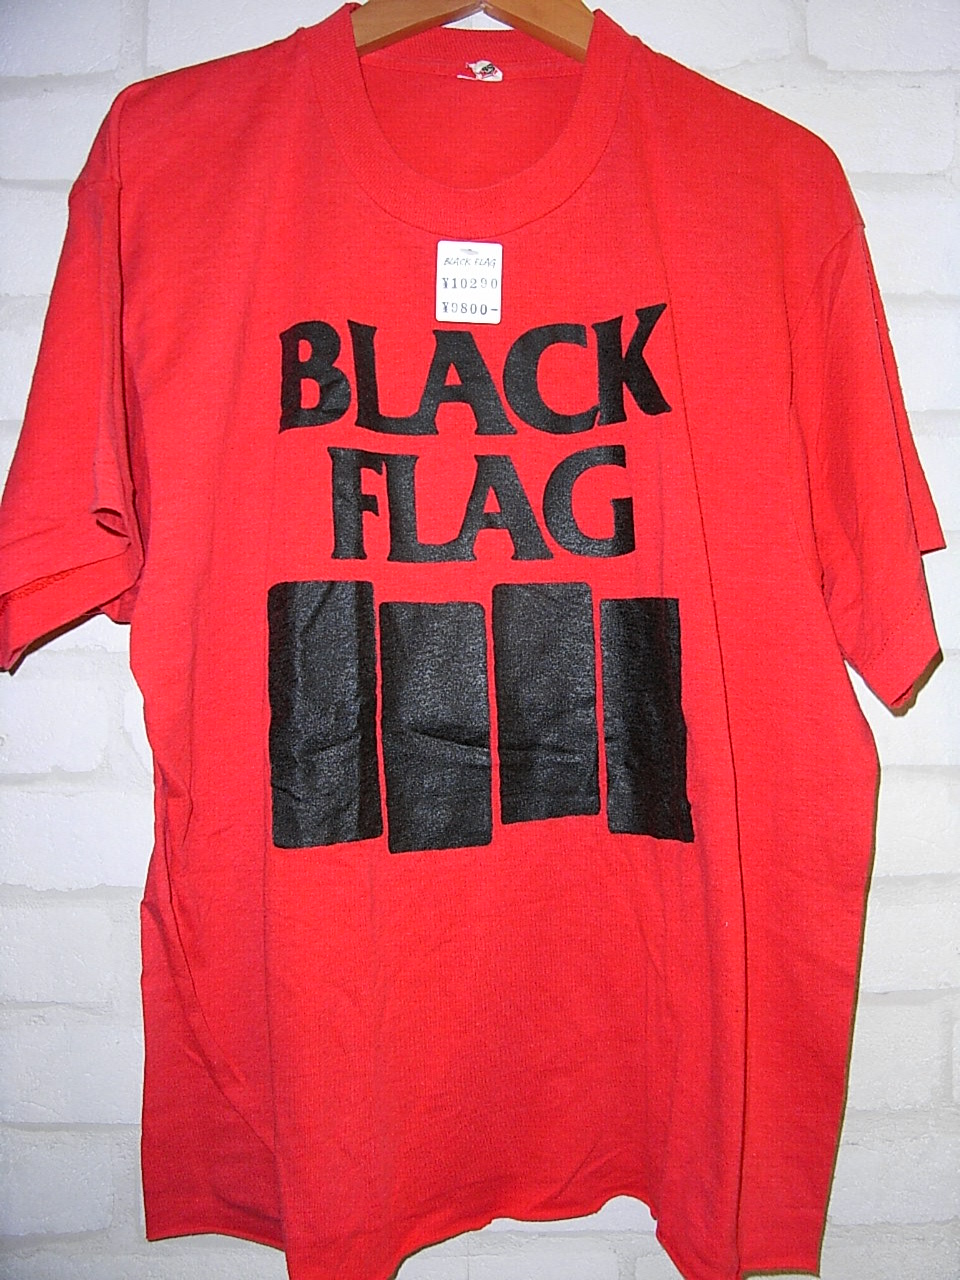 BLACK FLAG (ブラック・フラッグ) Tシャツ : 高円寺・古着屋・マッドセクションブログ